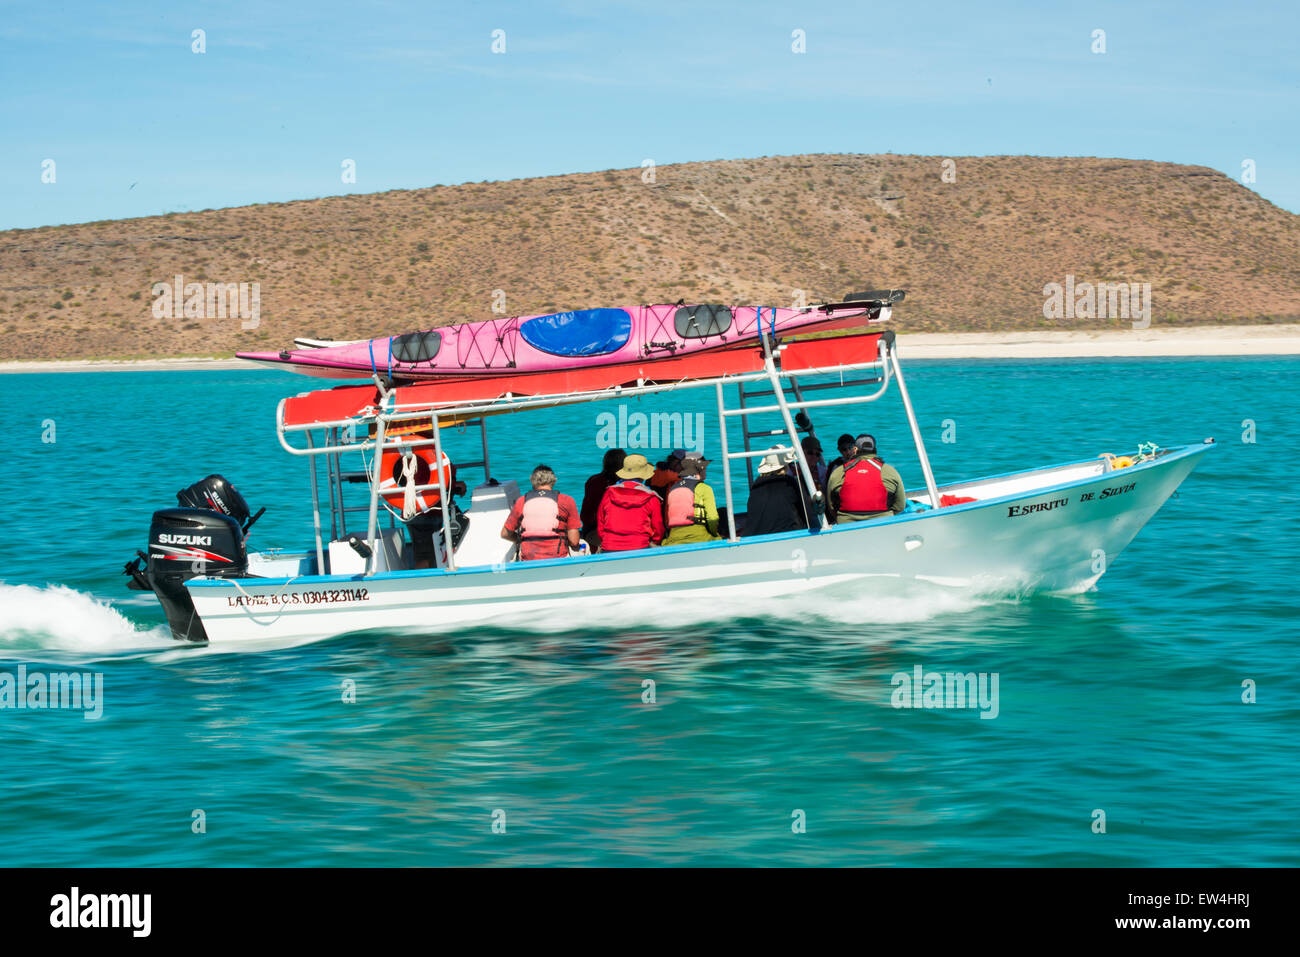 Mexiko, Baja, Lapaz, Espiritu Santo. Touristen im Boot fahren. Stockfoto